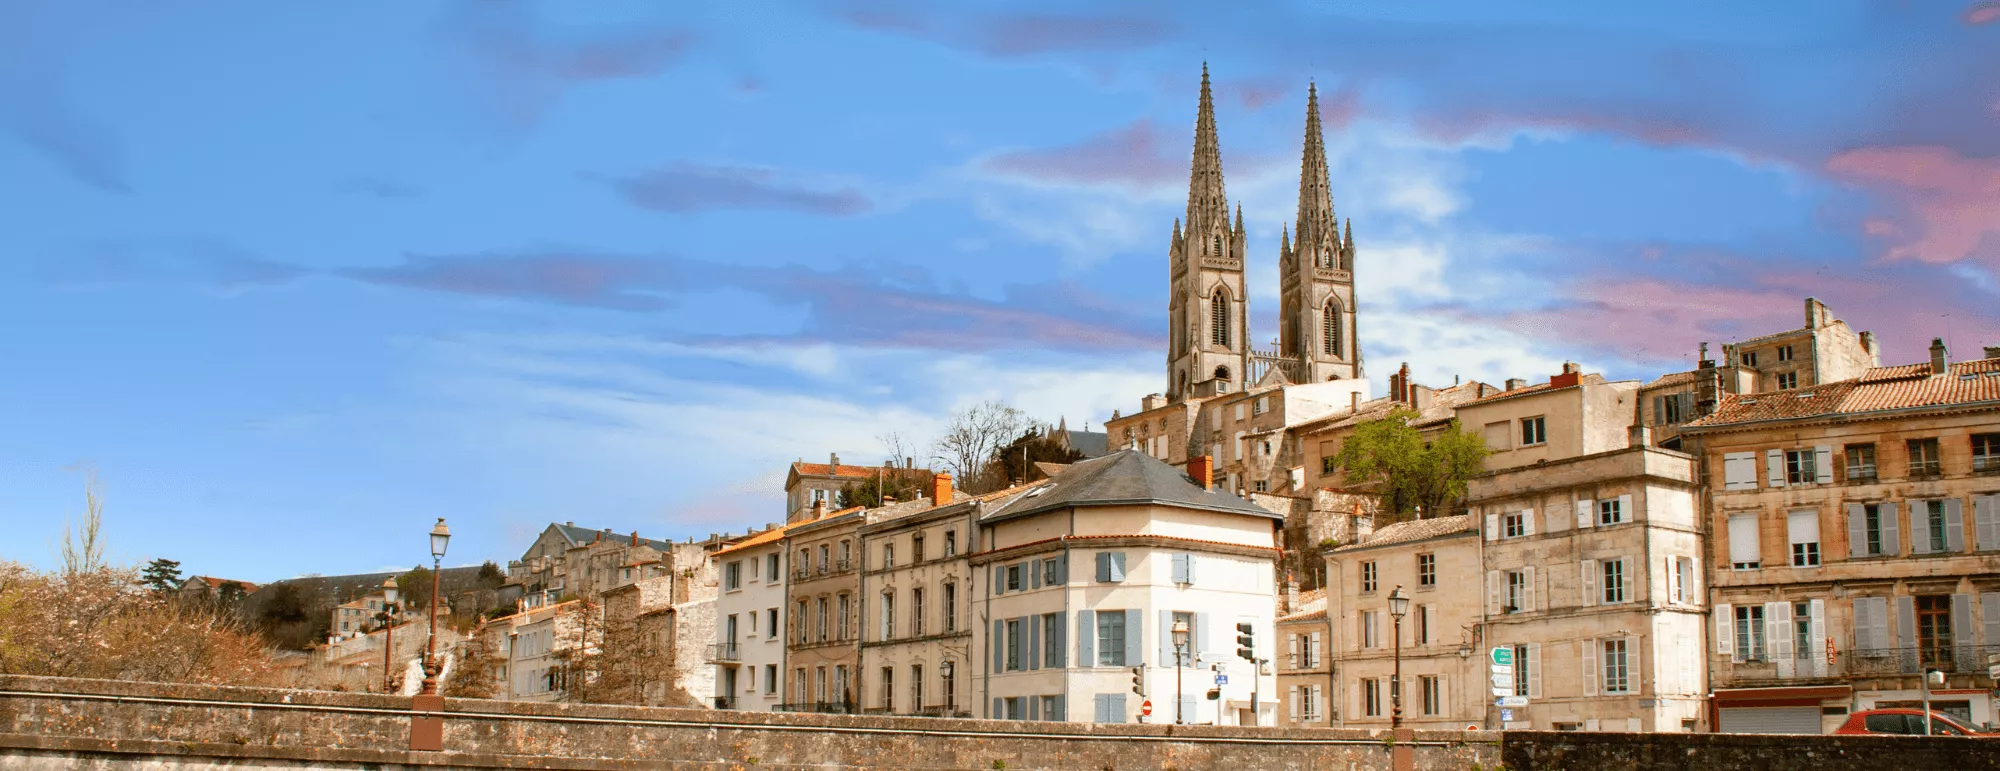 Top 10 des villes où les loyers sont les moins chers de France